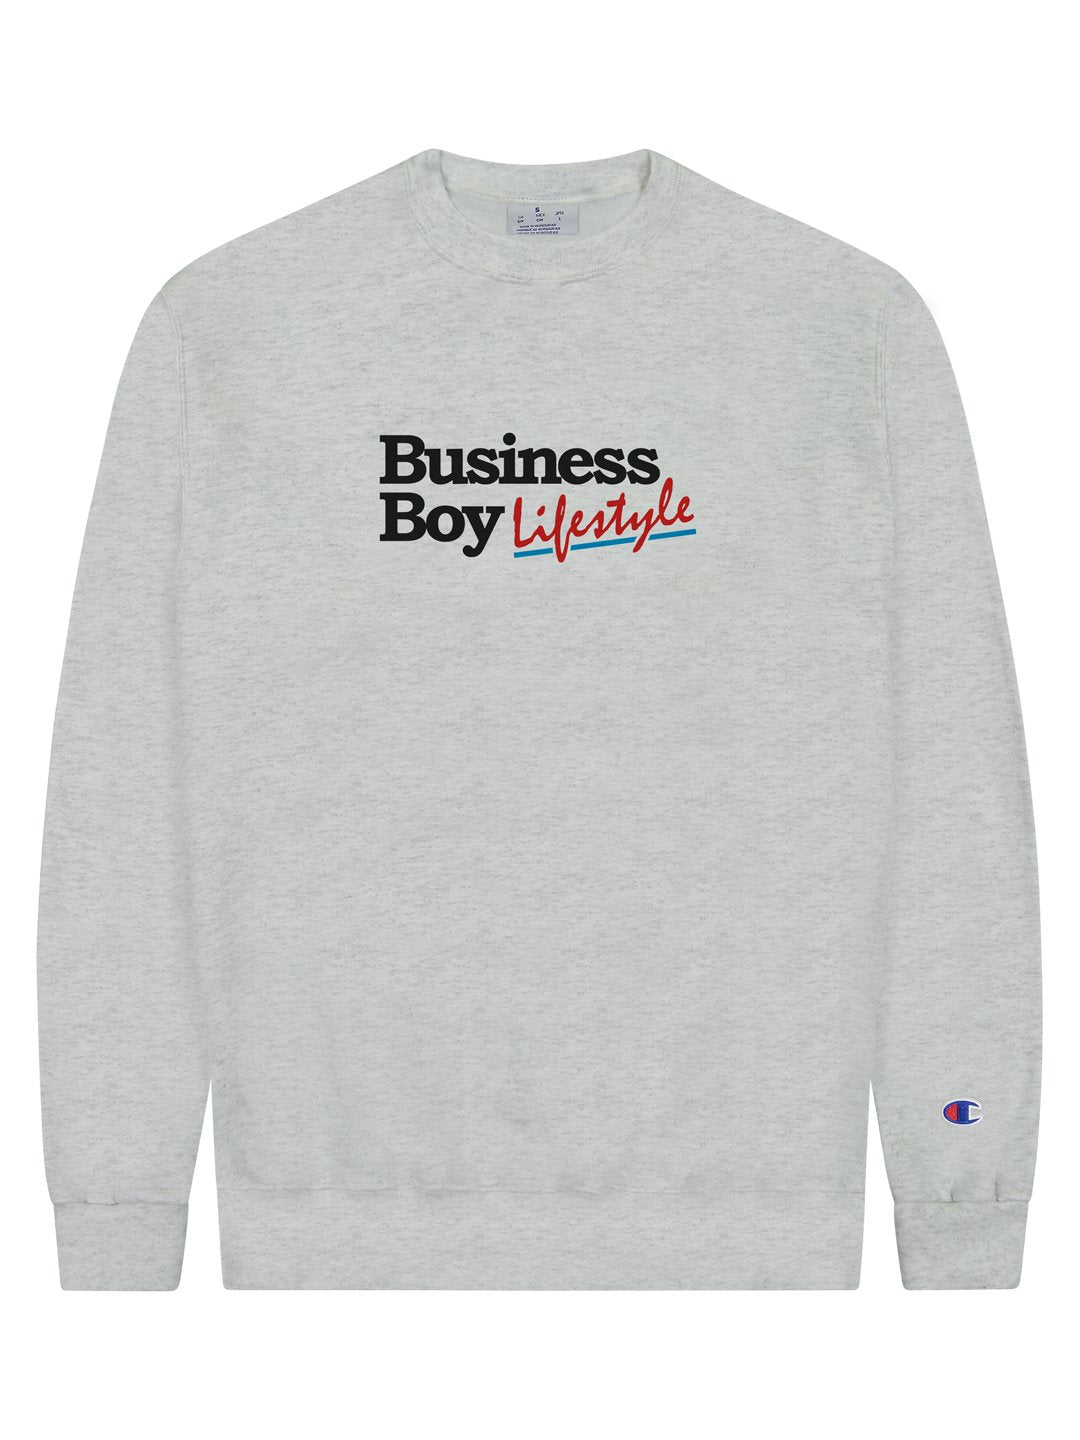 Business Boy Lifestyle Crewneck Sweatshirt Grey-Culk